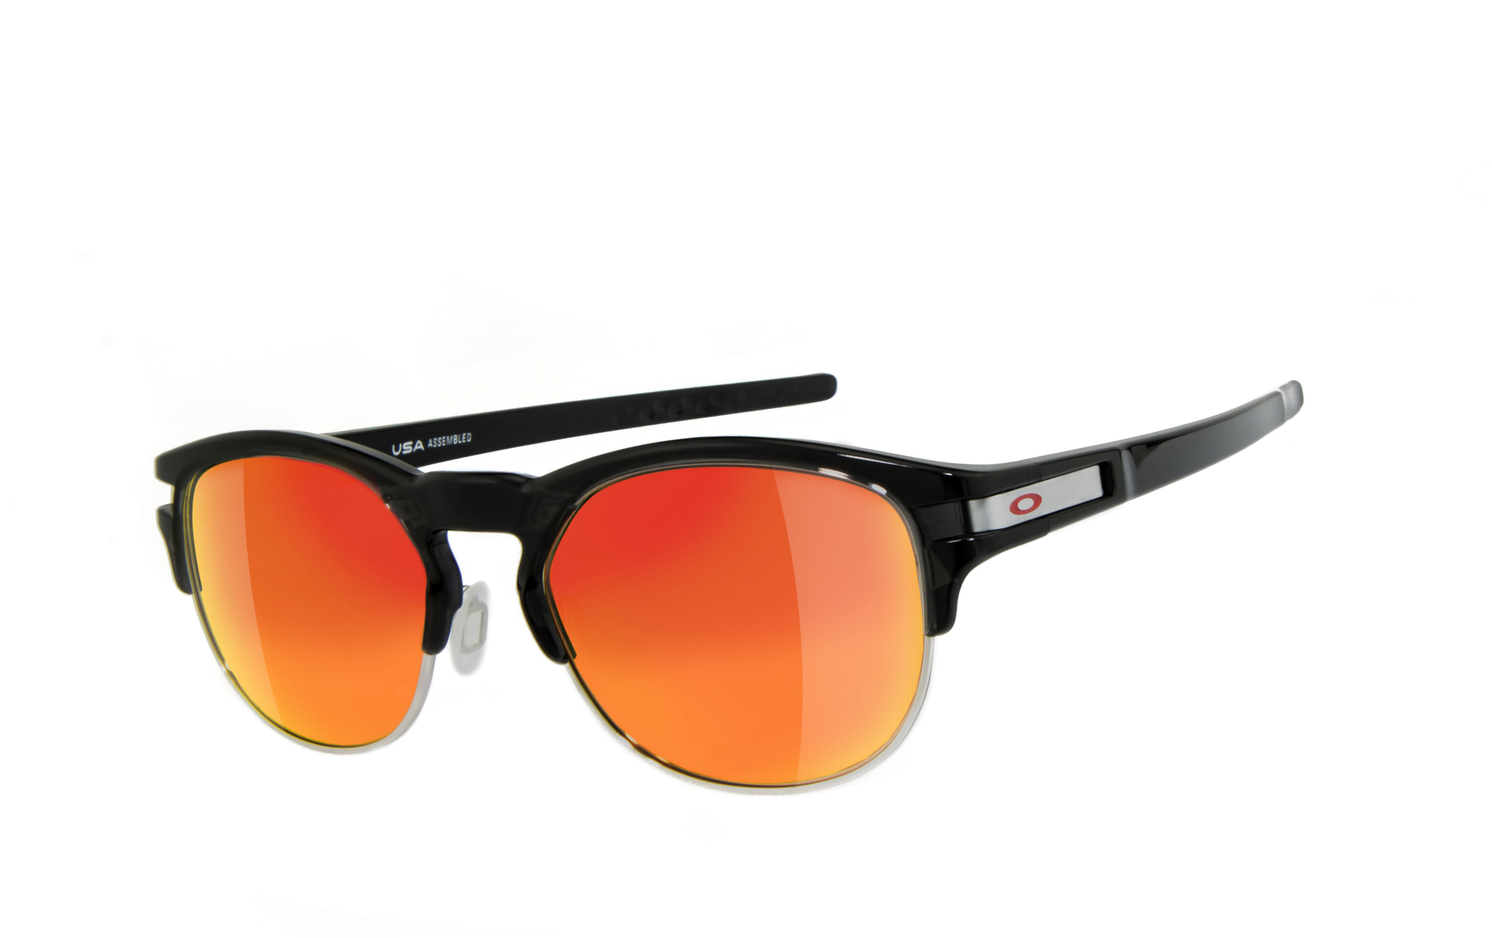 OAKLEY | LATCH KEY - OO9394  Sportbrille, Fahrradbrille, Sonnenbrille, Bikerbrille, Radbrille, UV400 Schutzfilter